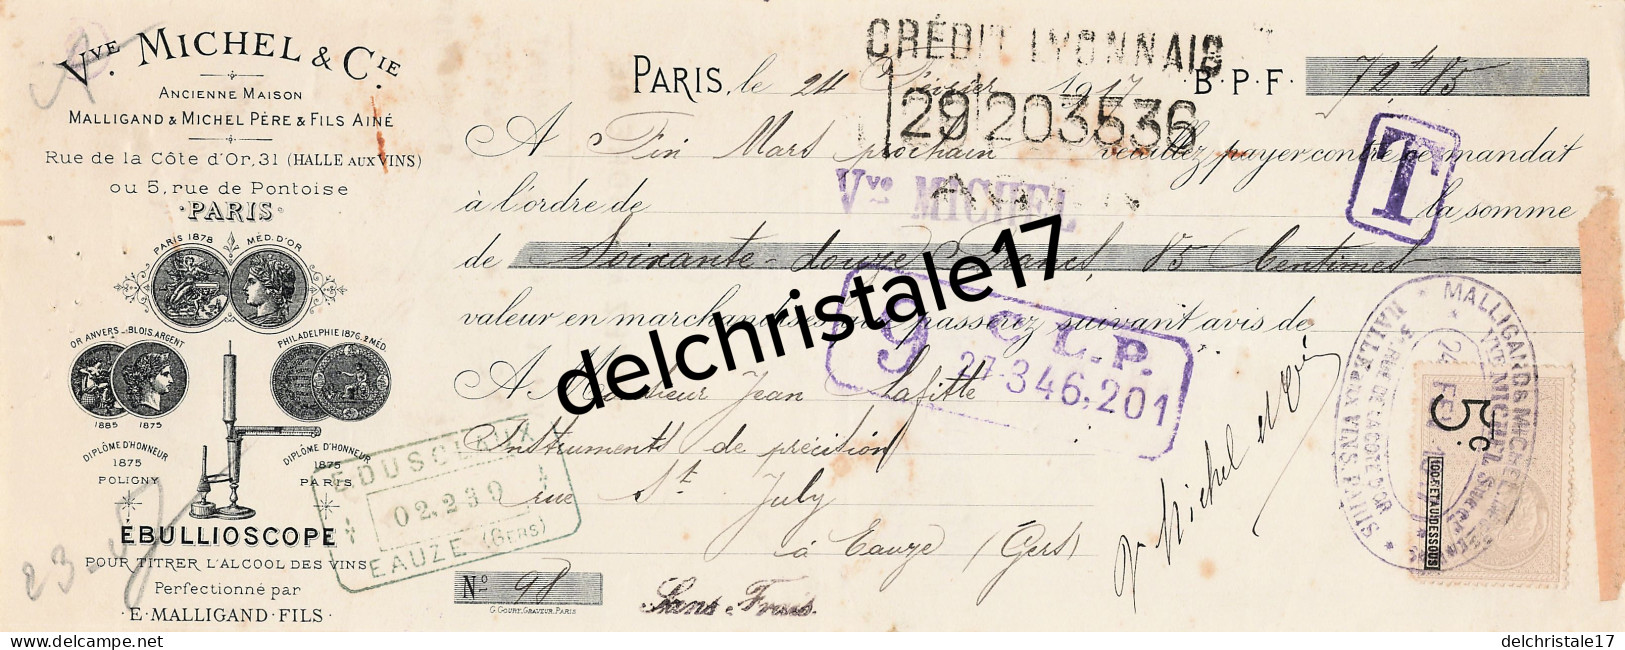 75 1952 PARIS SEINE 1917 Ébullioscope Pour Titrer Alcool Des Vins Vve MICHEL Cie Succ MALLIGAND Rue Cote D'Or à LAFITTE - Lettres De Change